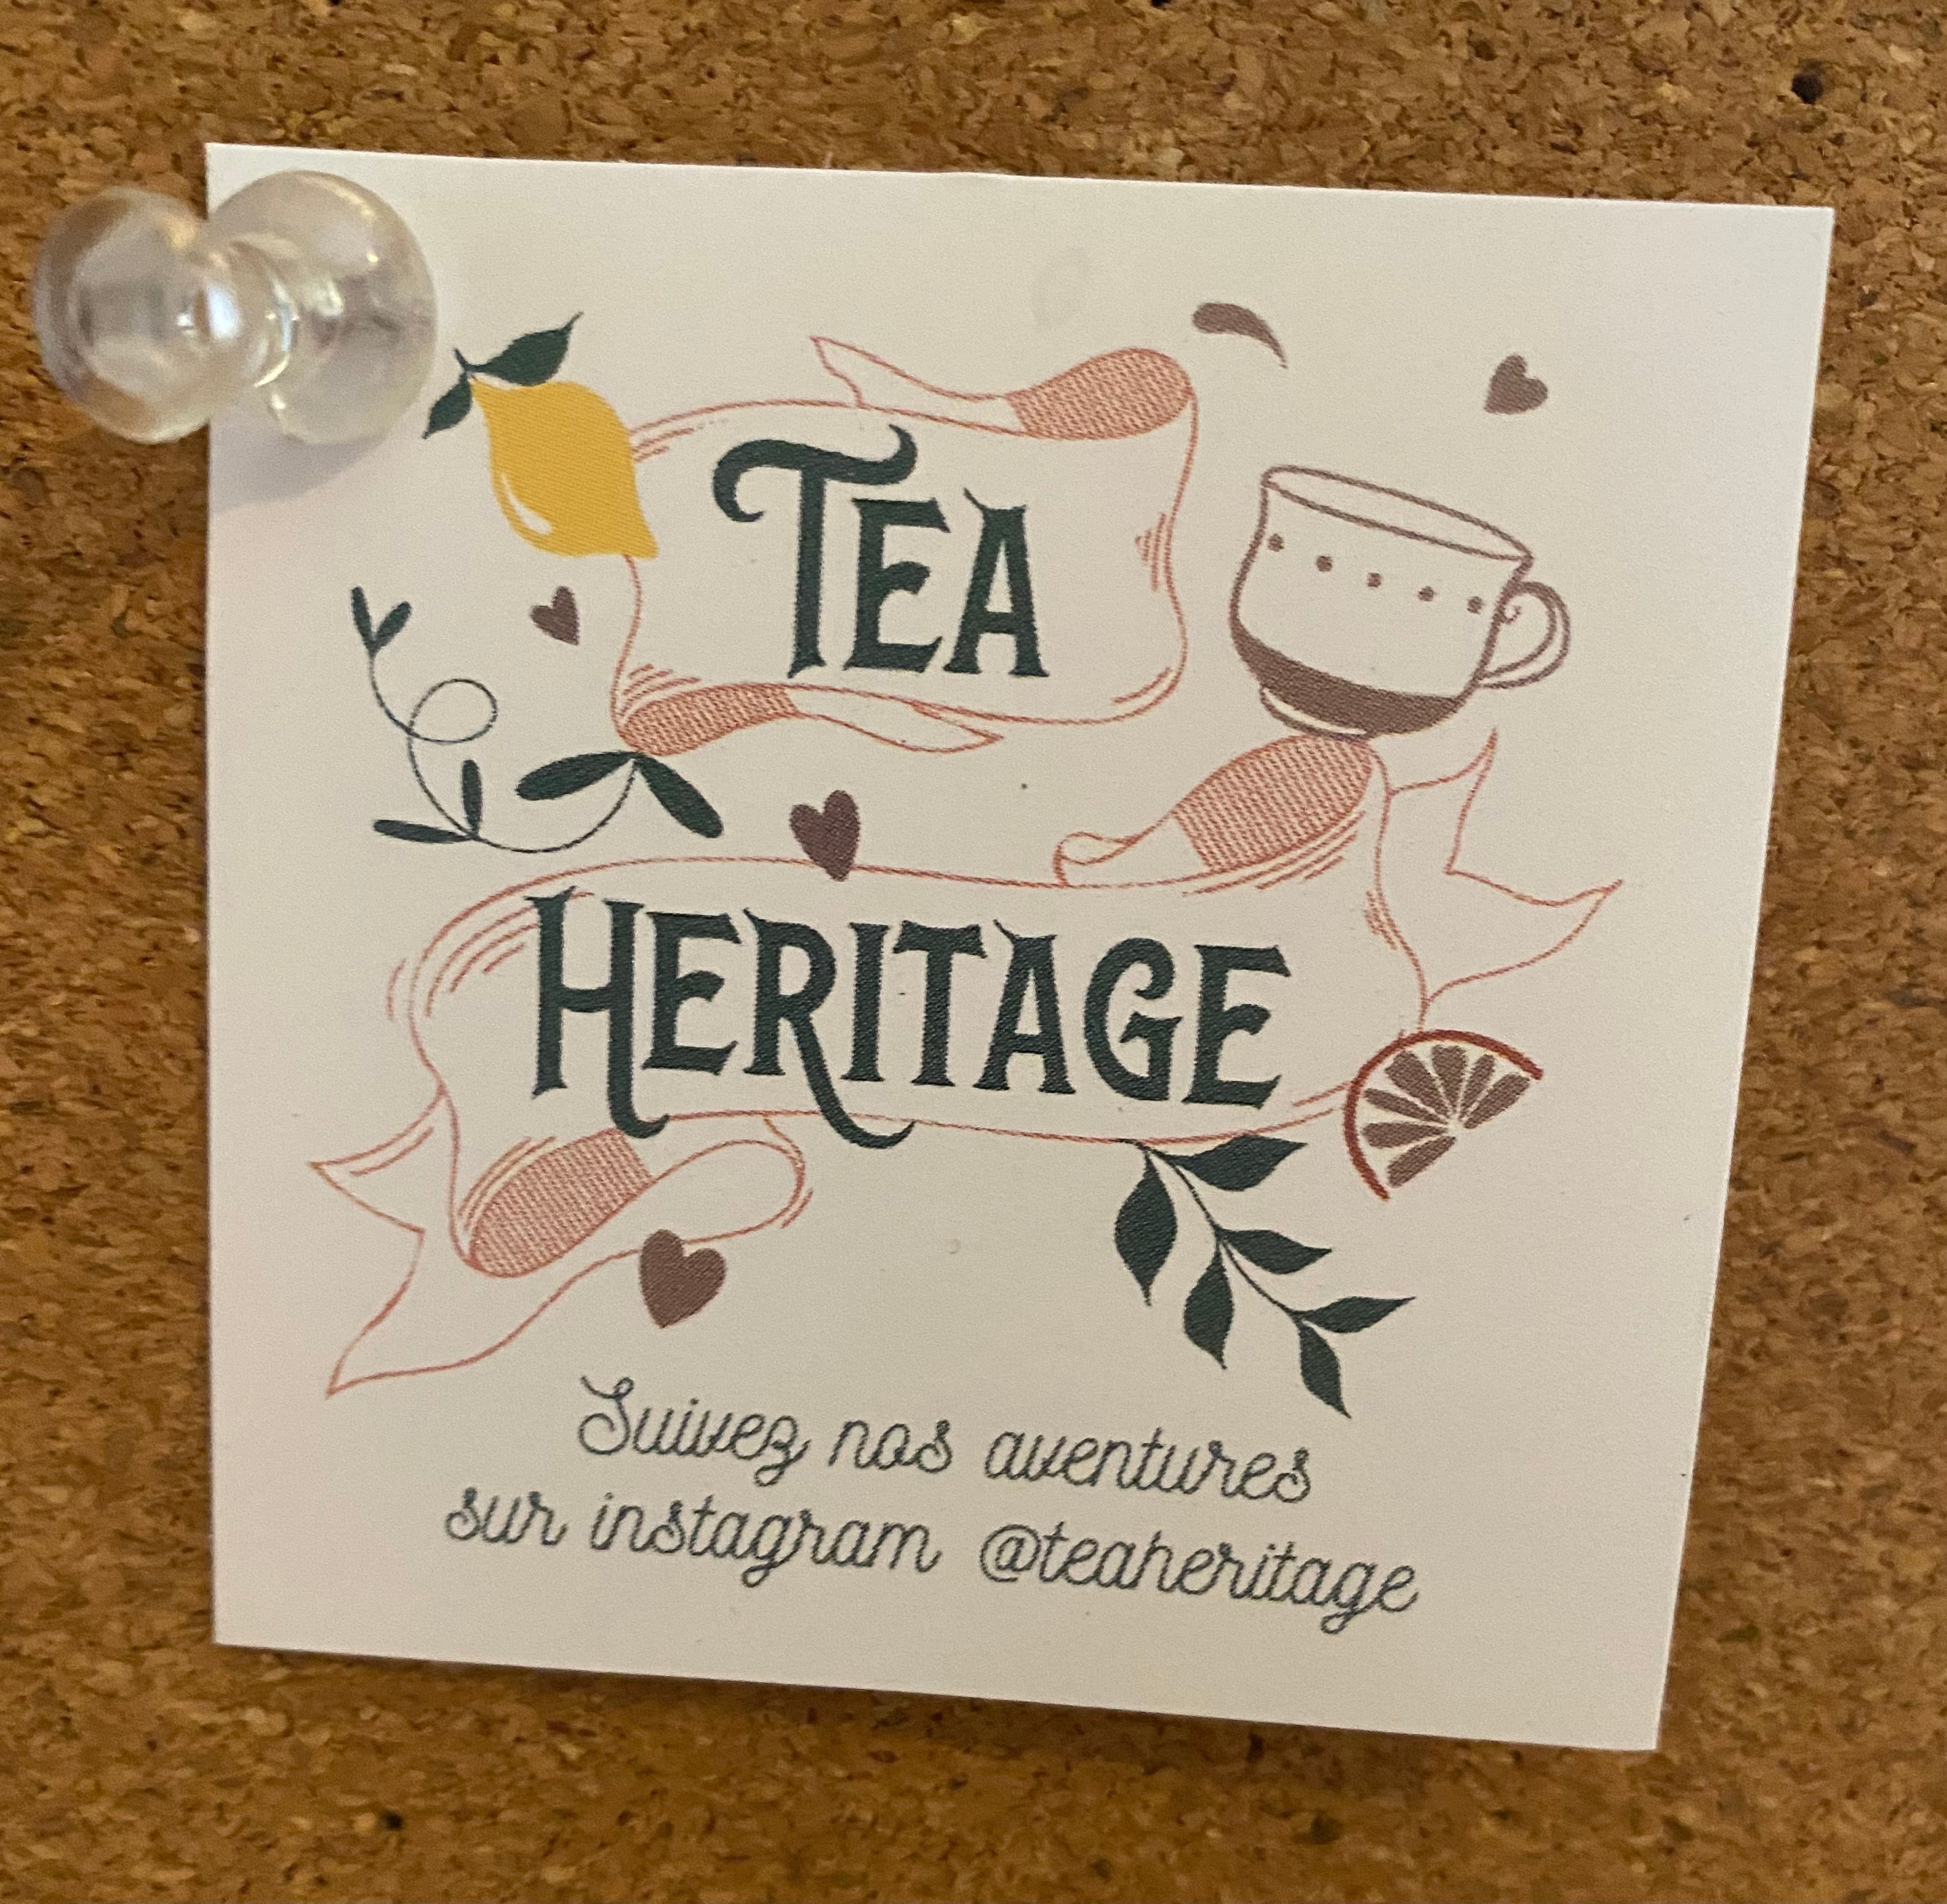 Mitten Tea Bags by Tea Heritage